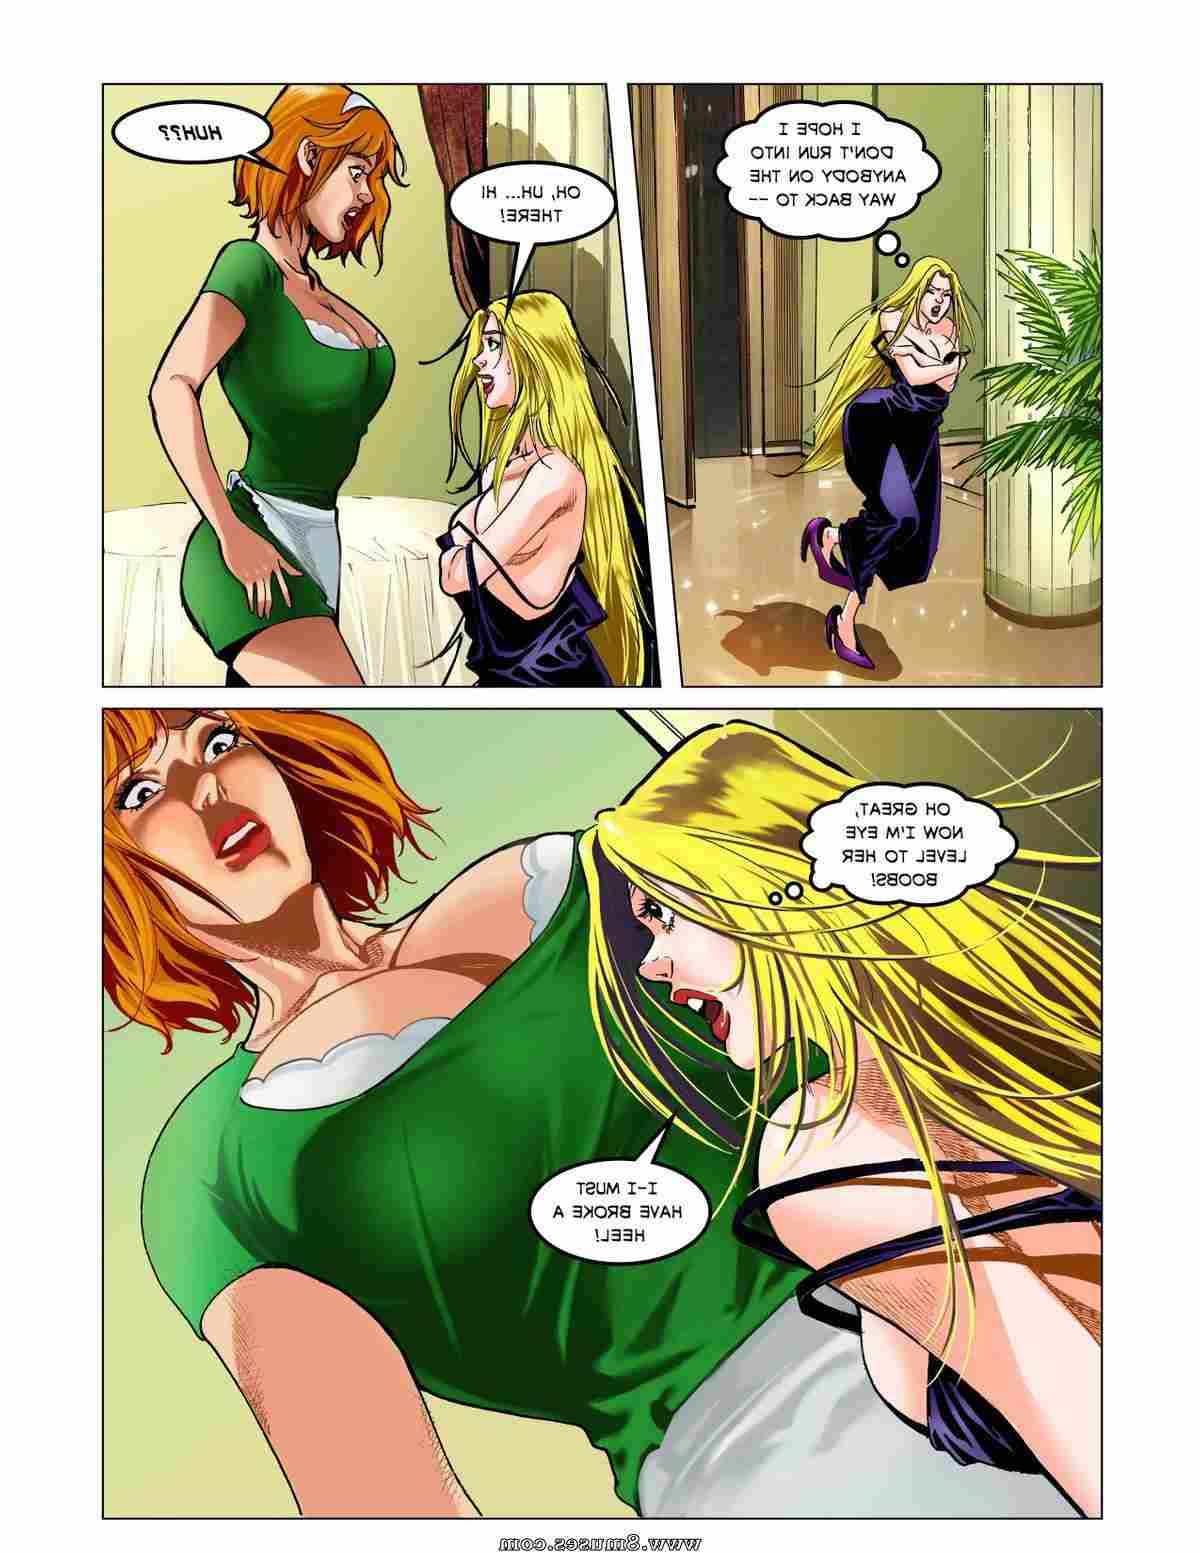 DreamTales-Comics/Mega-Marilyn-and-The-Incredible-Shrinking-Suzy Mega_Marilyn_and_The_Incredible_Shrinking_Suzy__8muses_-_Sex_and_Porn_Comics_12.jpg